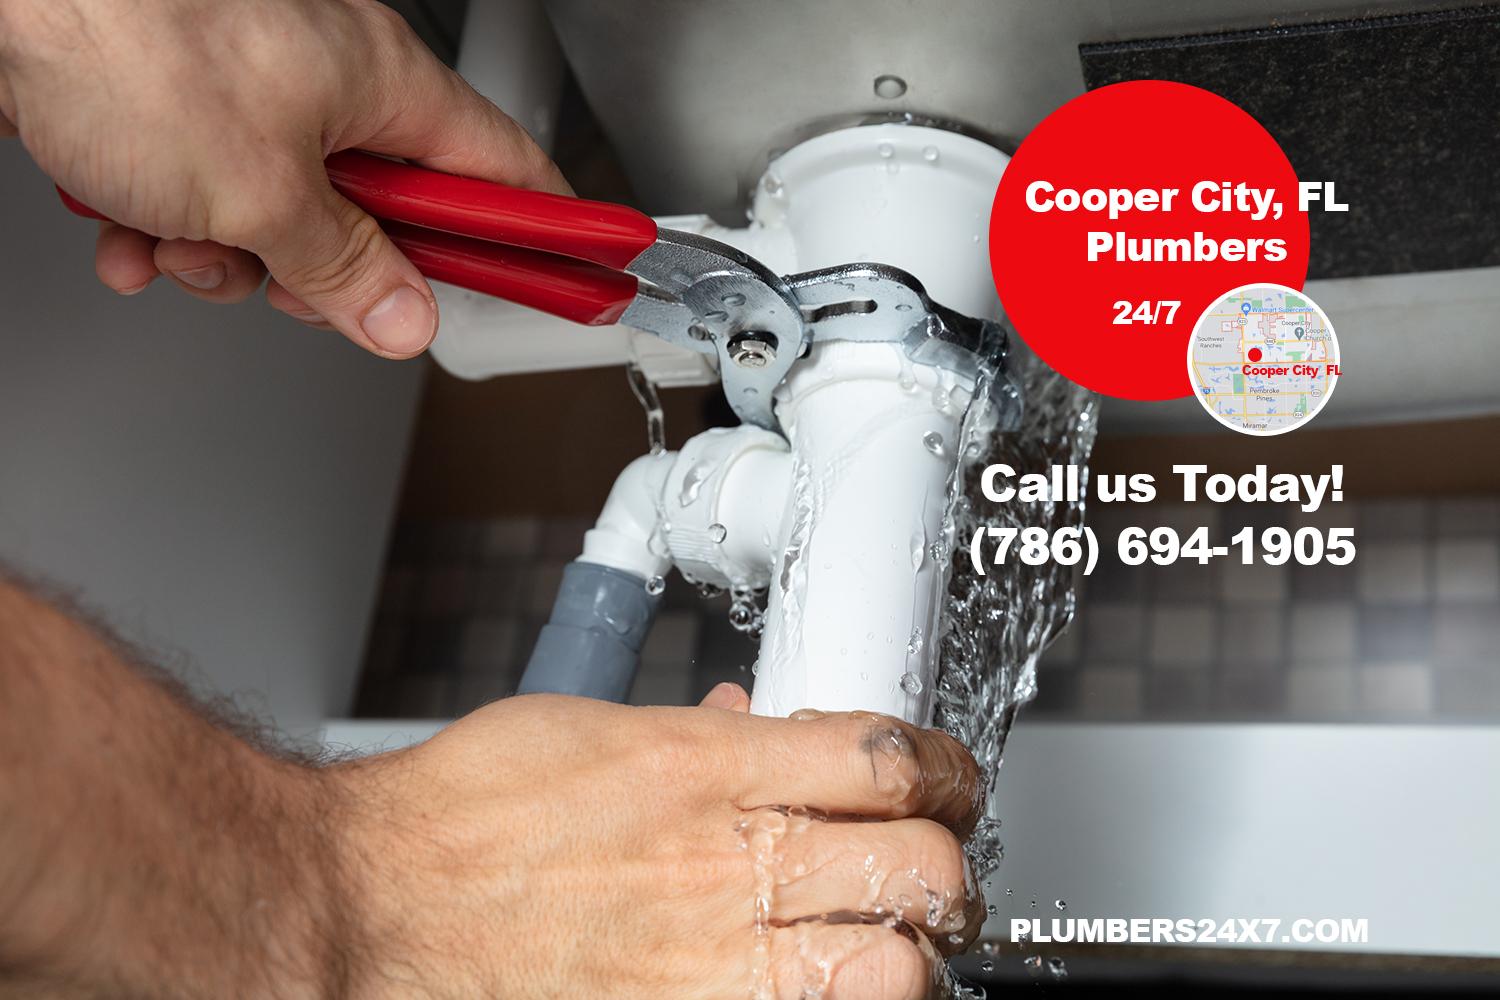 Cooper City Plumbers - Broward Plumbers - Emergency Plumbers